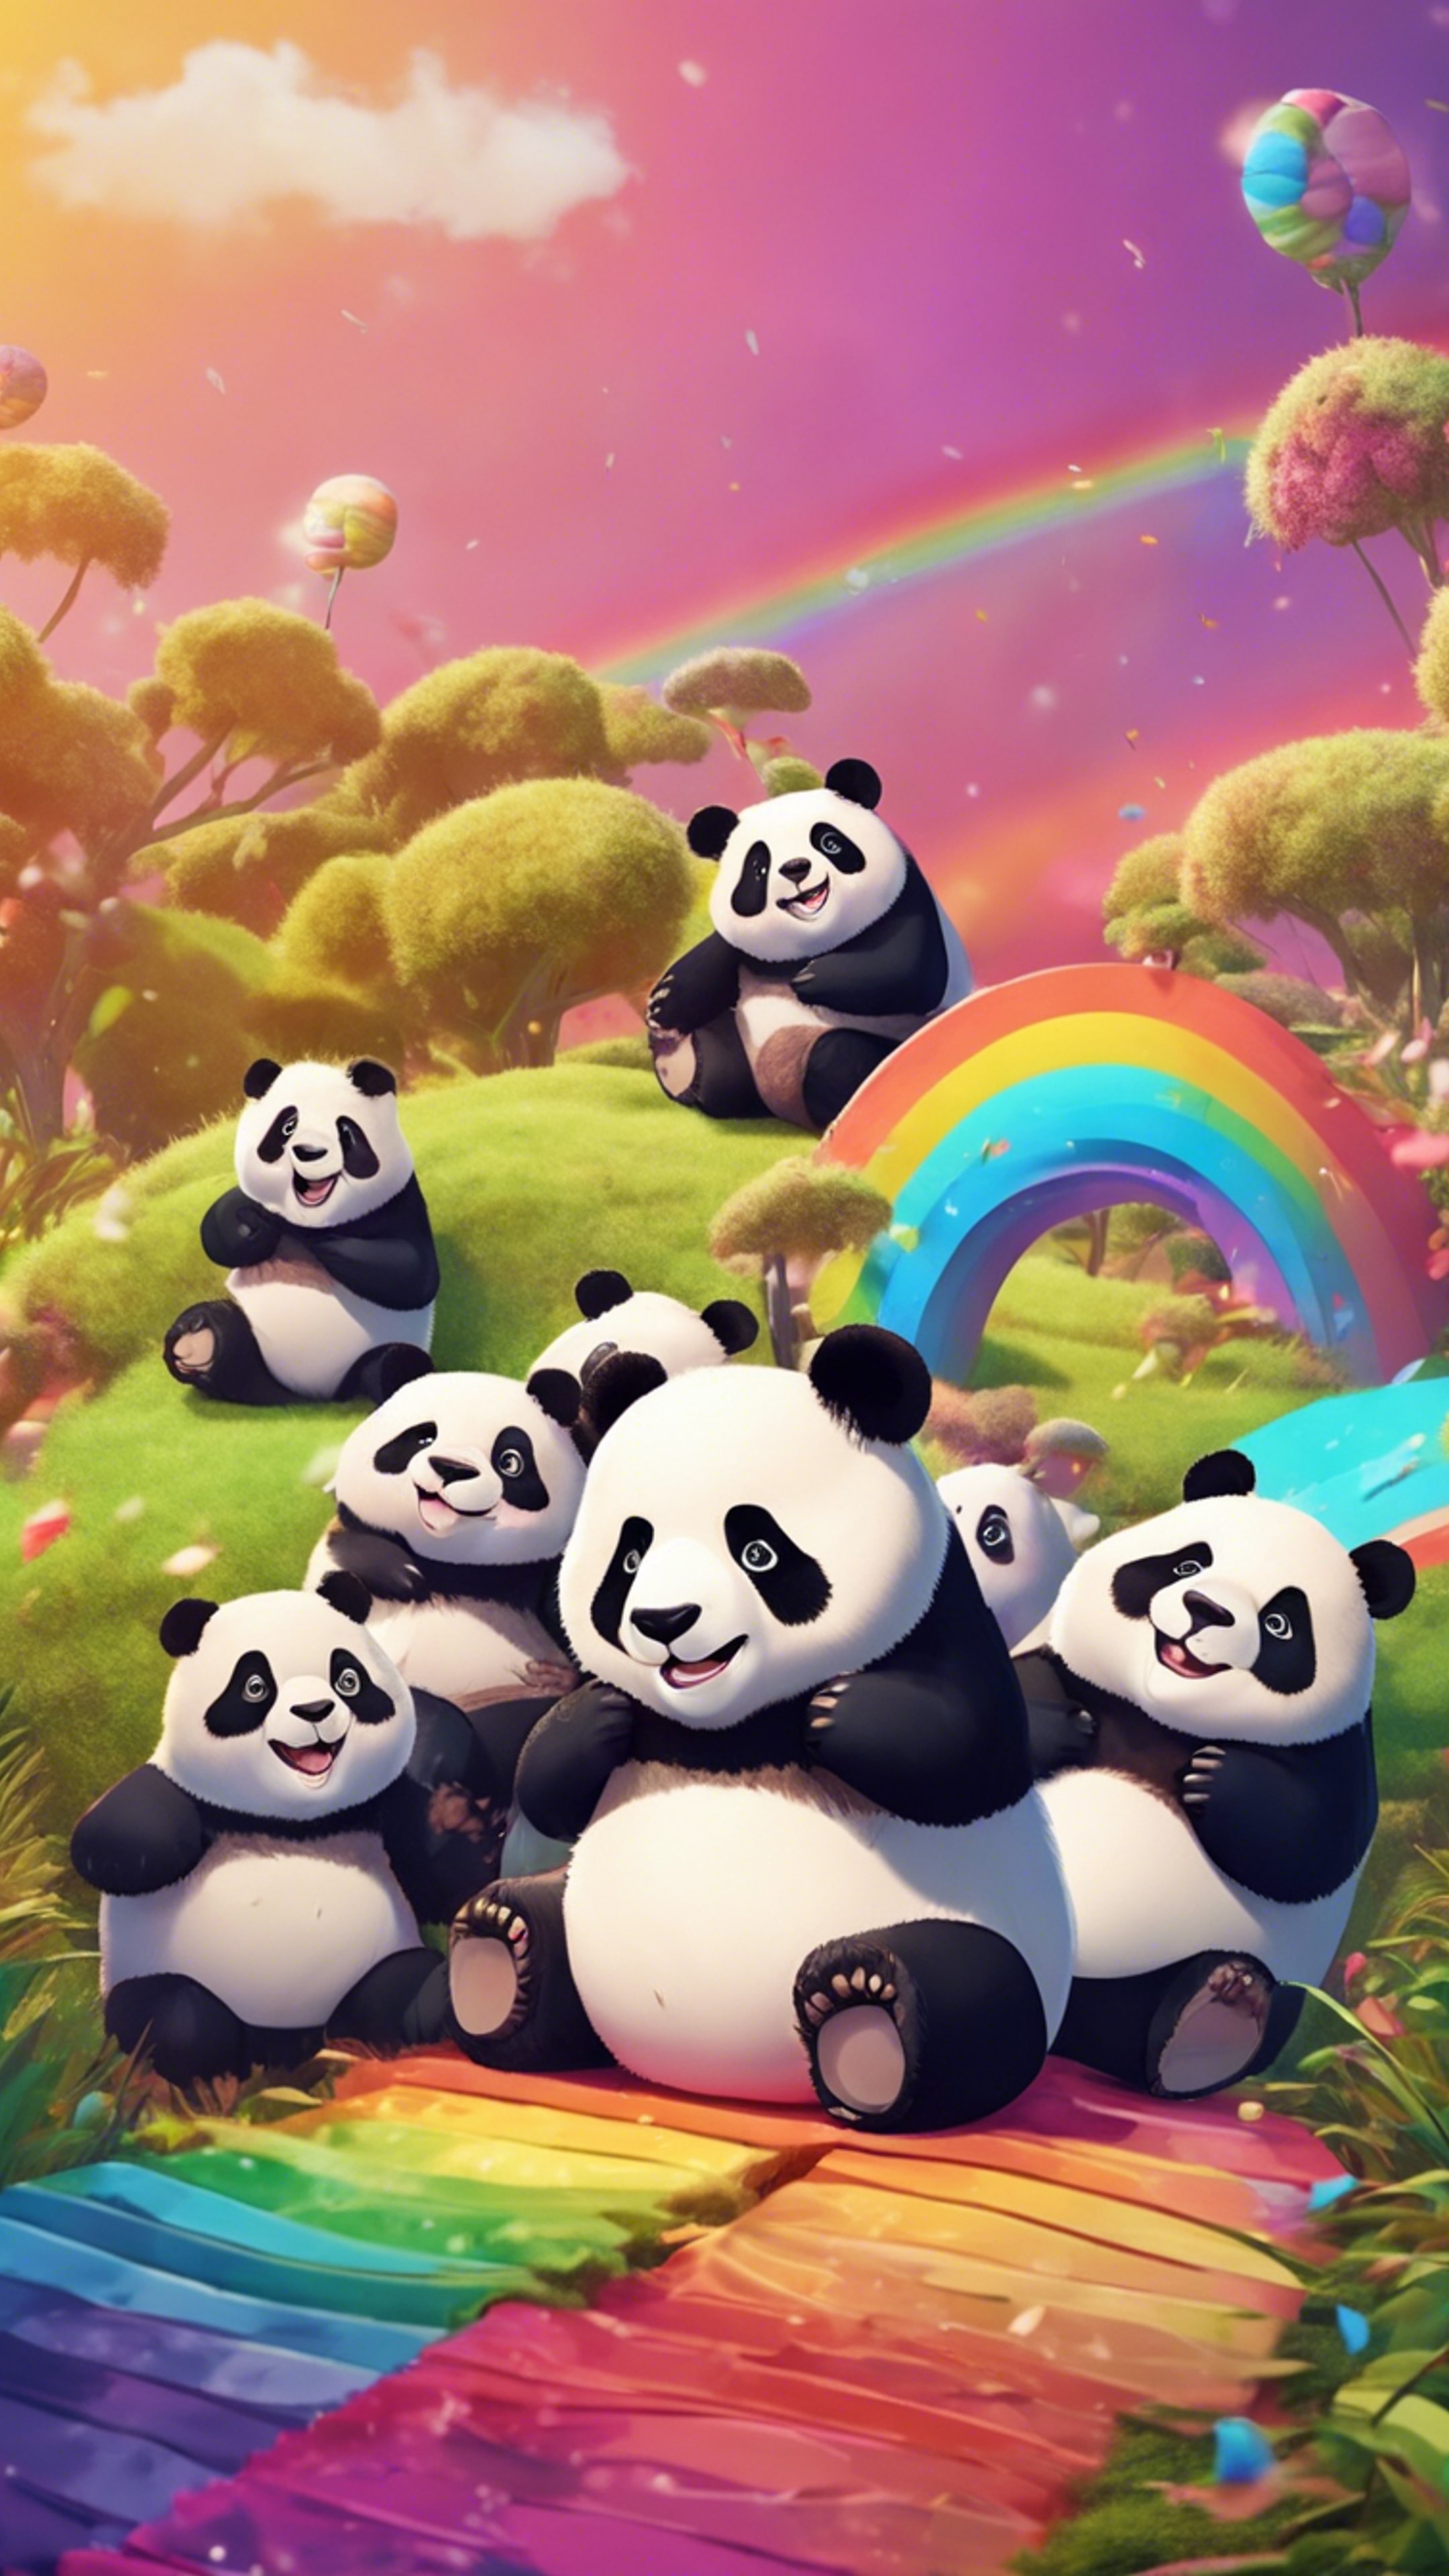 A group of chubby, adorable pandas sliding down a vibrant rainbow. Papel de parede[164879d3f9f4475687c2]